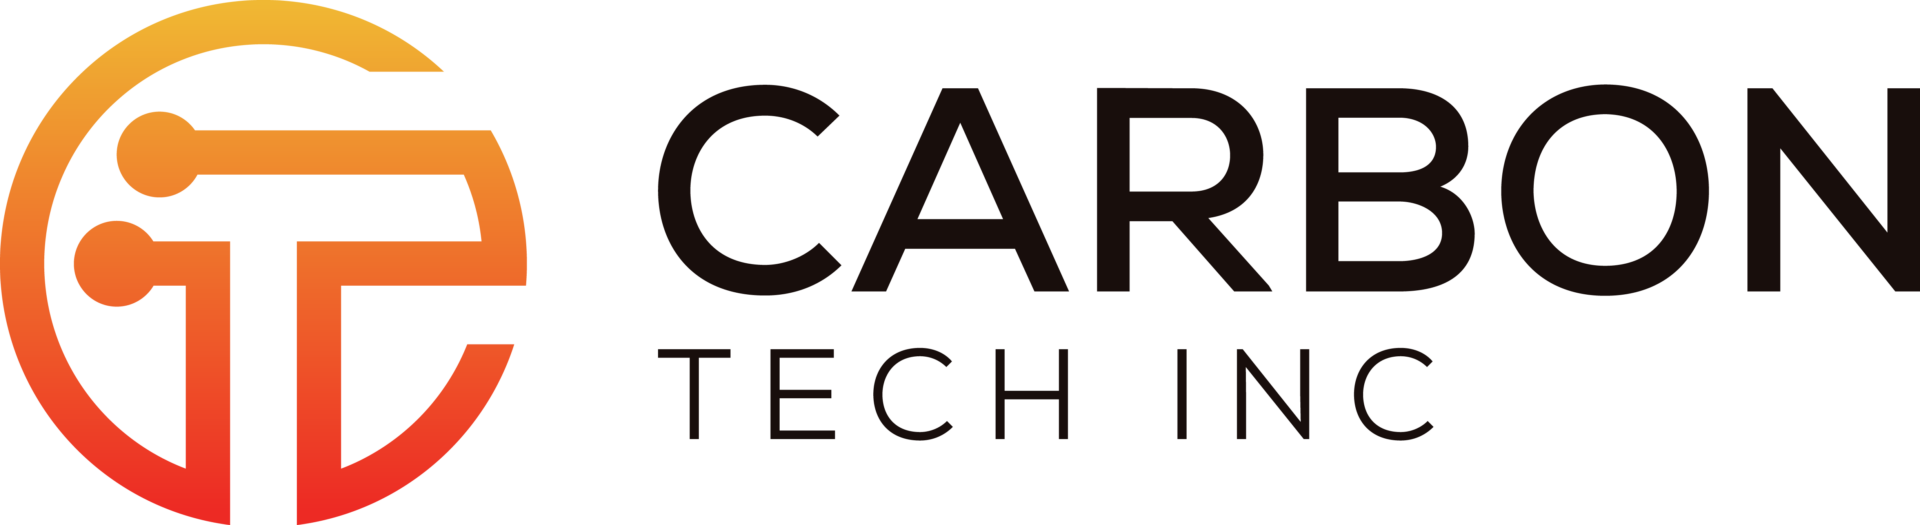 Carbon Tech Inc